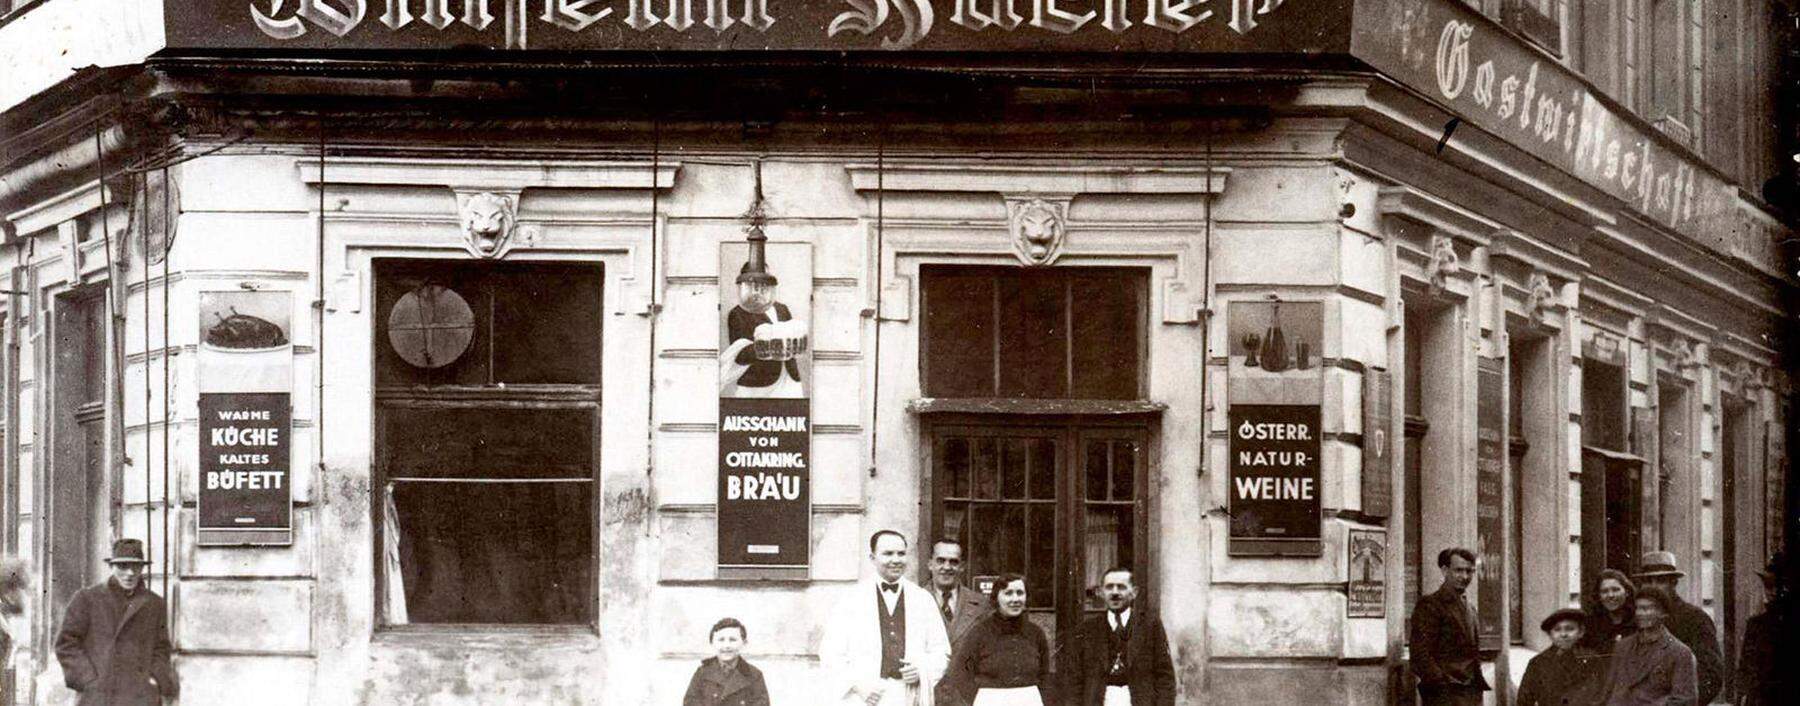 Im ersten Stock wurden Zähne gezogen, im Parterre herrschte der Wirt: Wiener Gastwirtschaft Wilhelm Hacker, Ansichtskarte aus den 1930er-Jahren.